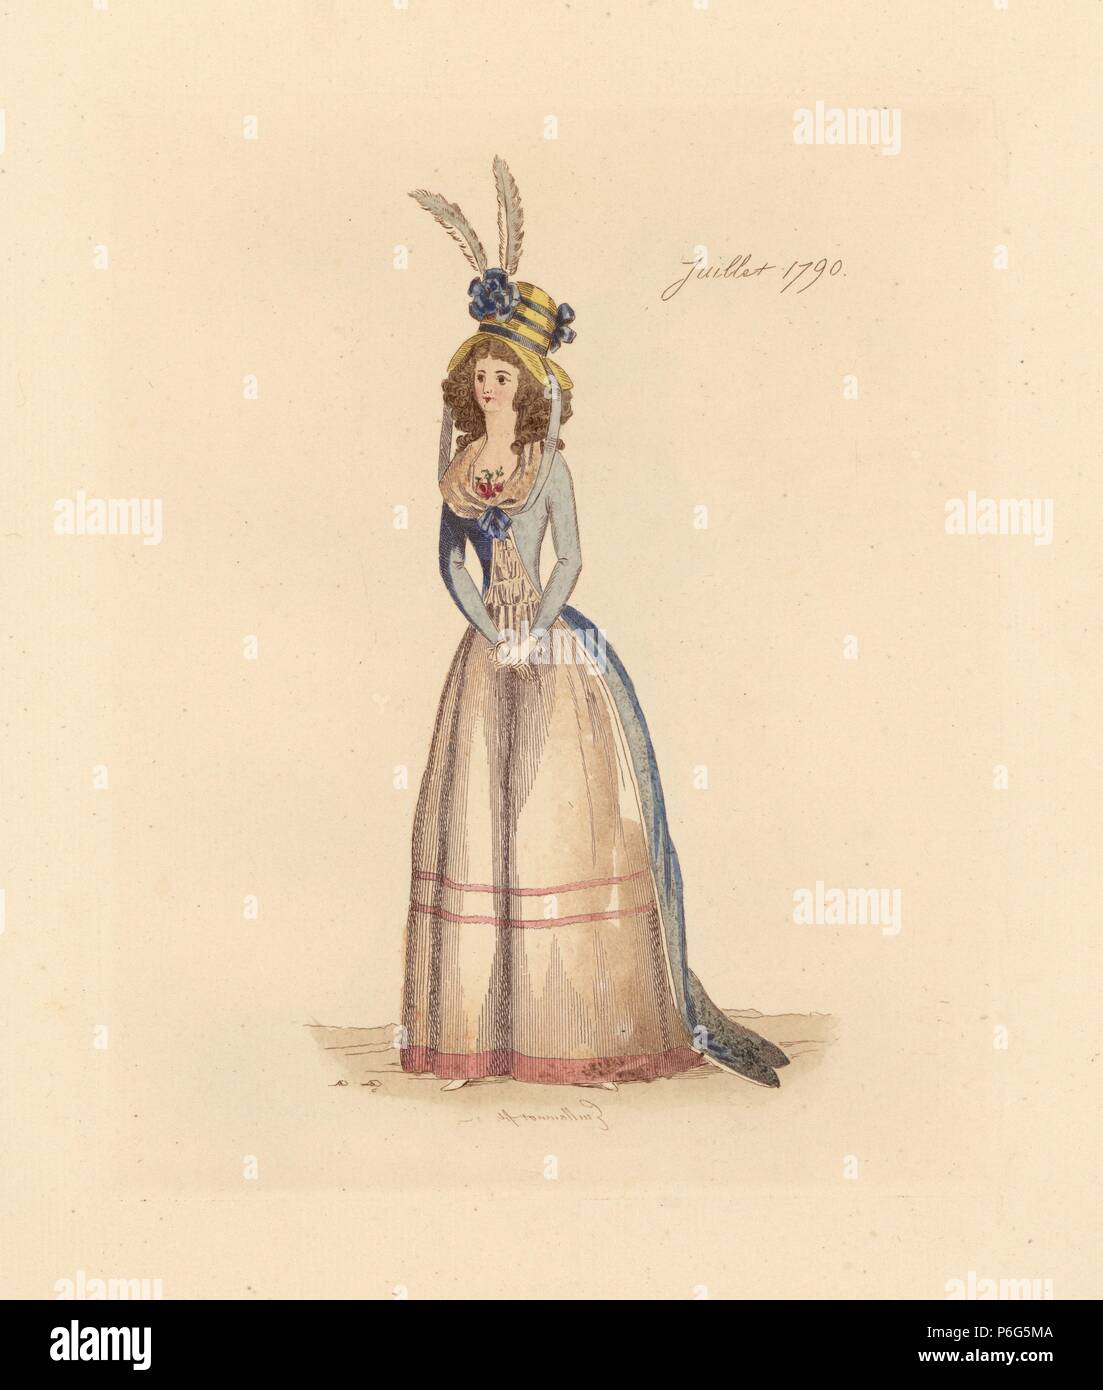 Femme française portant les vêtements de juillet 1790. Elle porte un chapeau  de paille avec des plumes et cocardes, perruque complète, fichu (foulard),  monté sur redingote jupons. Gravure coloriée par Auguste Etienne